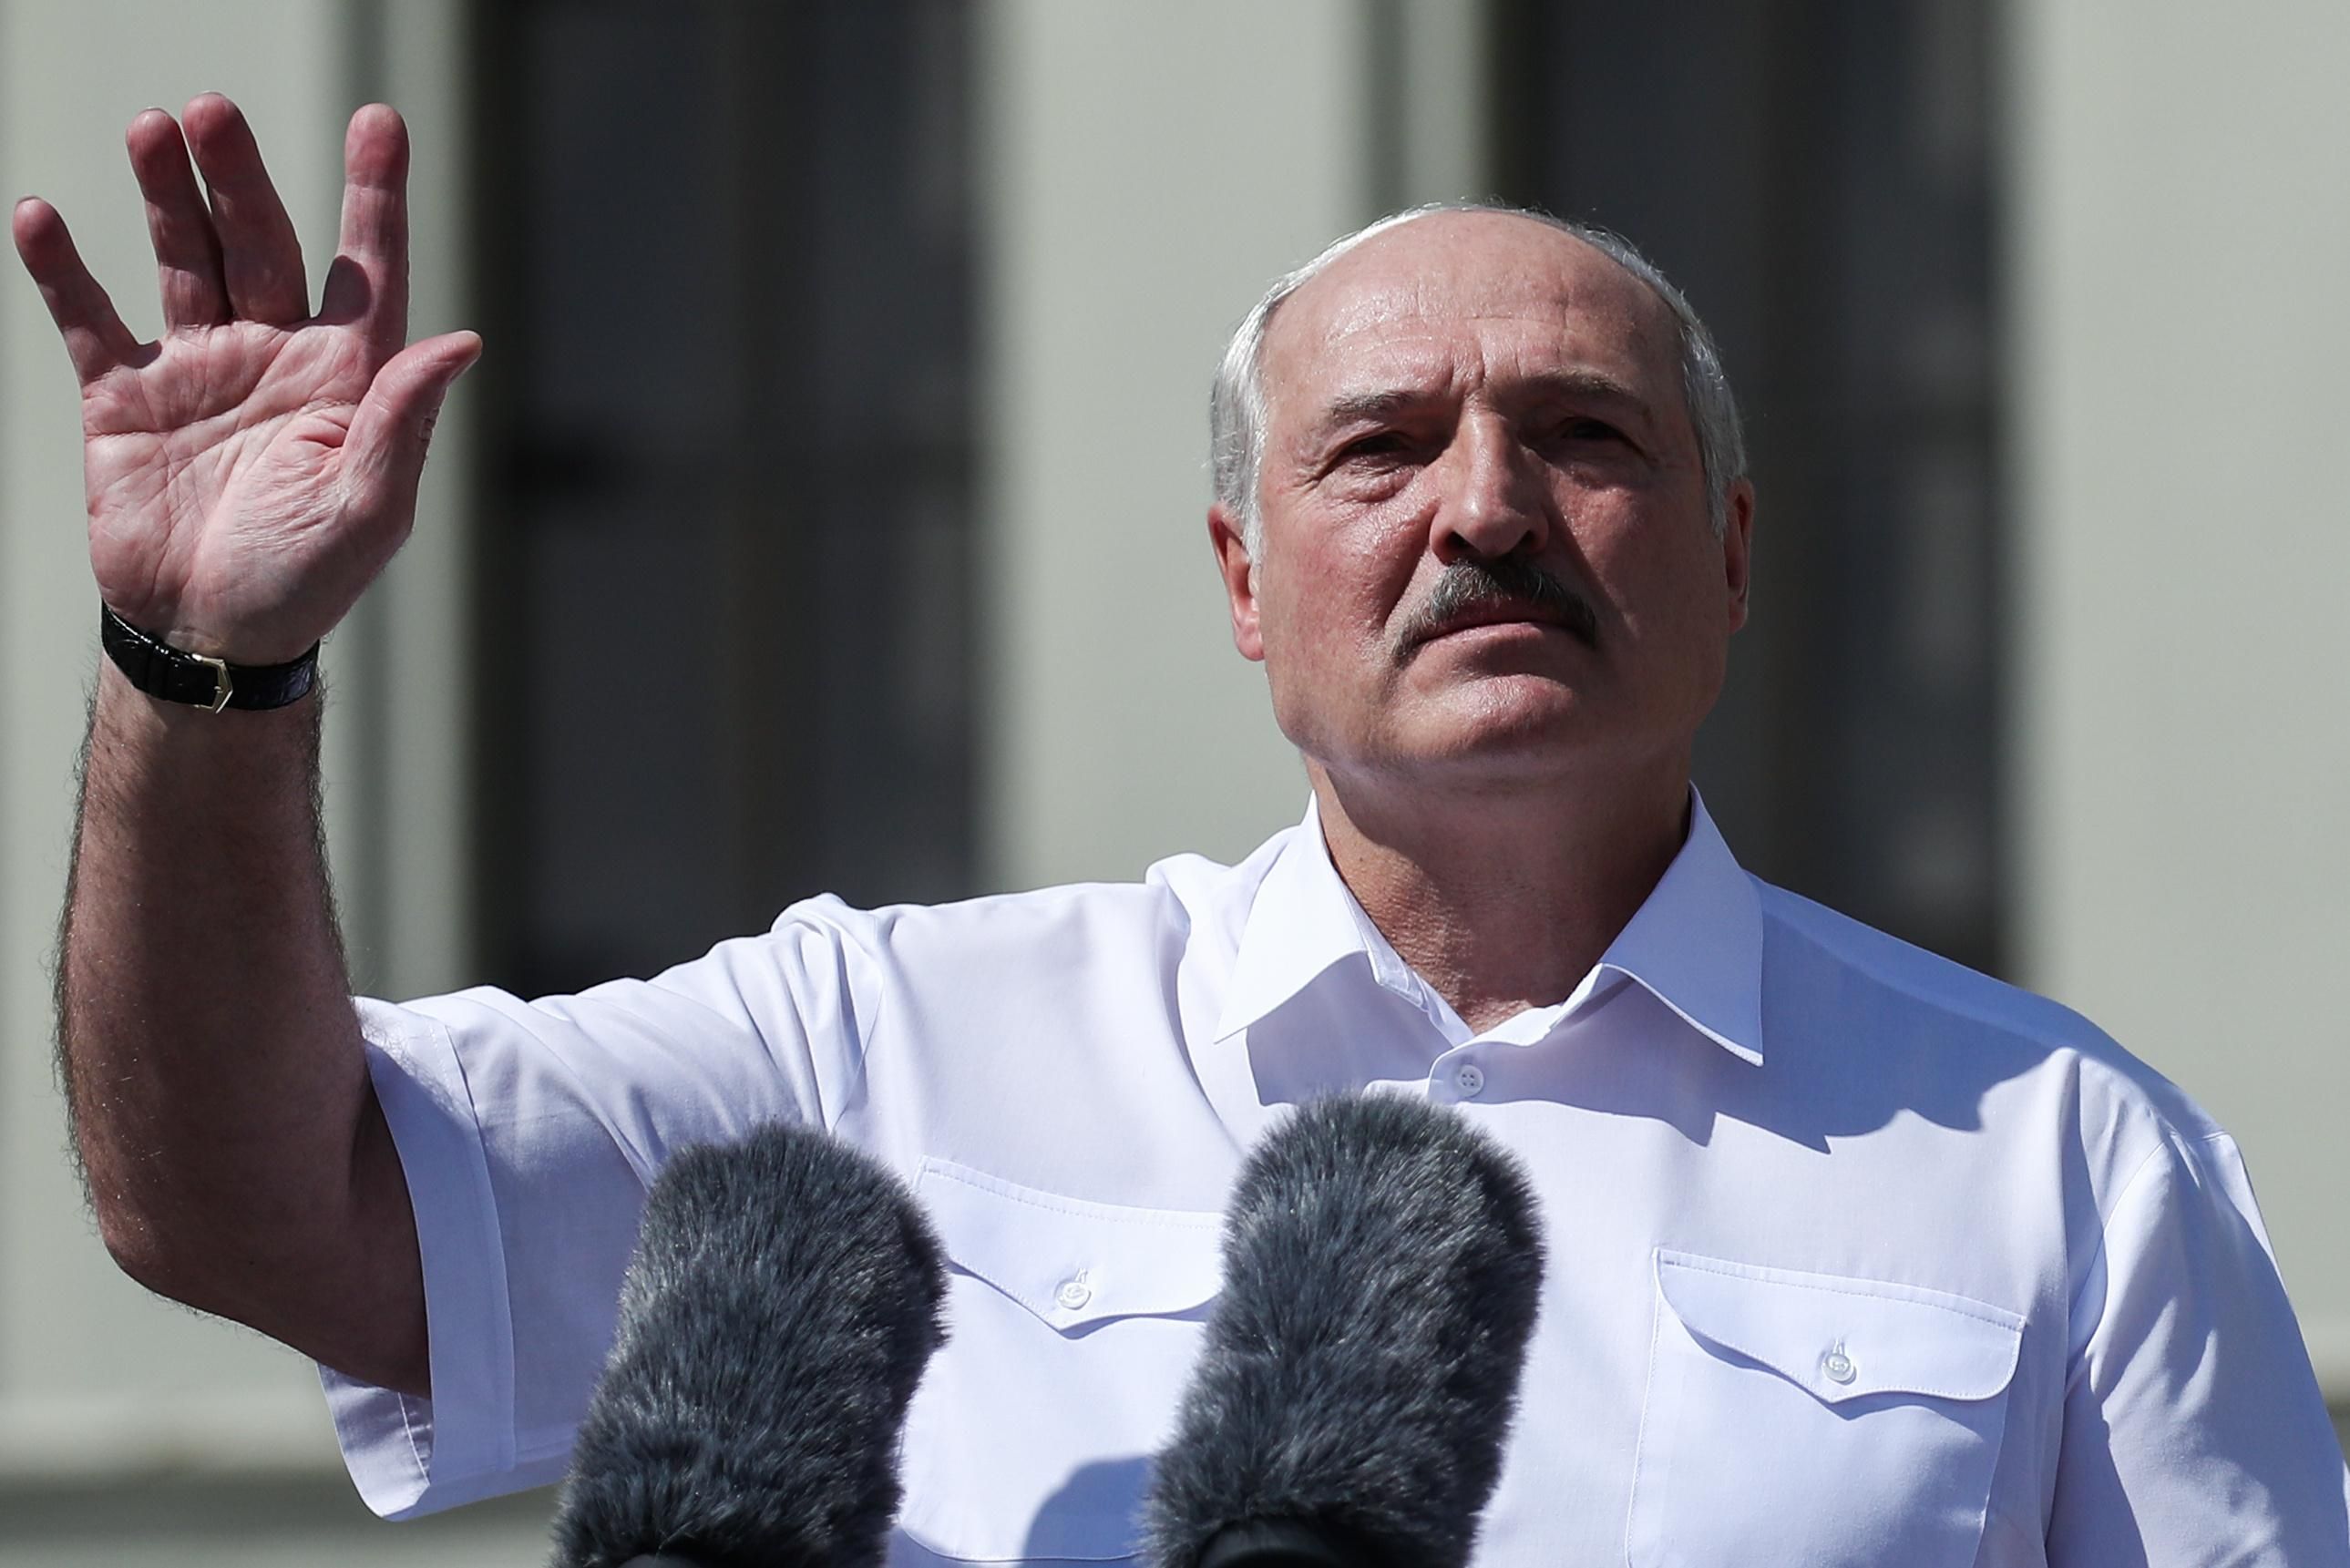 Лукашенко загоняет страну в экономический коллапс, - Латушко